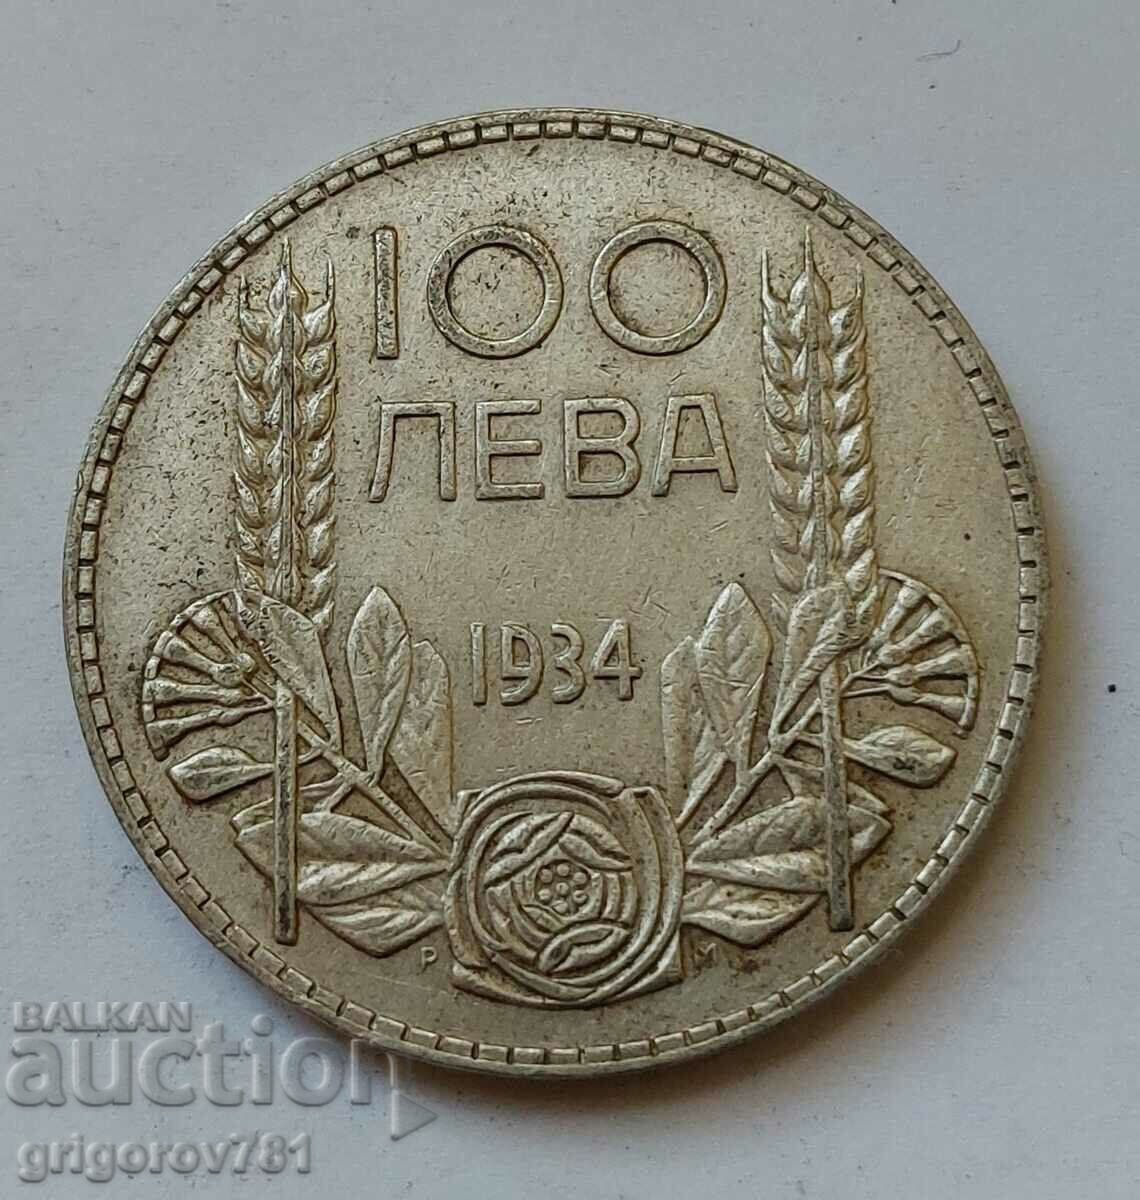 100 leva silver Bulgaria 1934 - silver coin #119